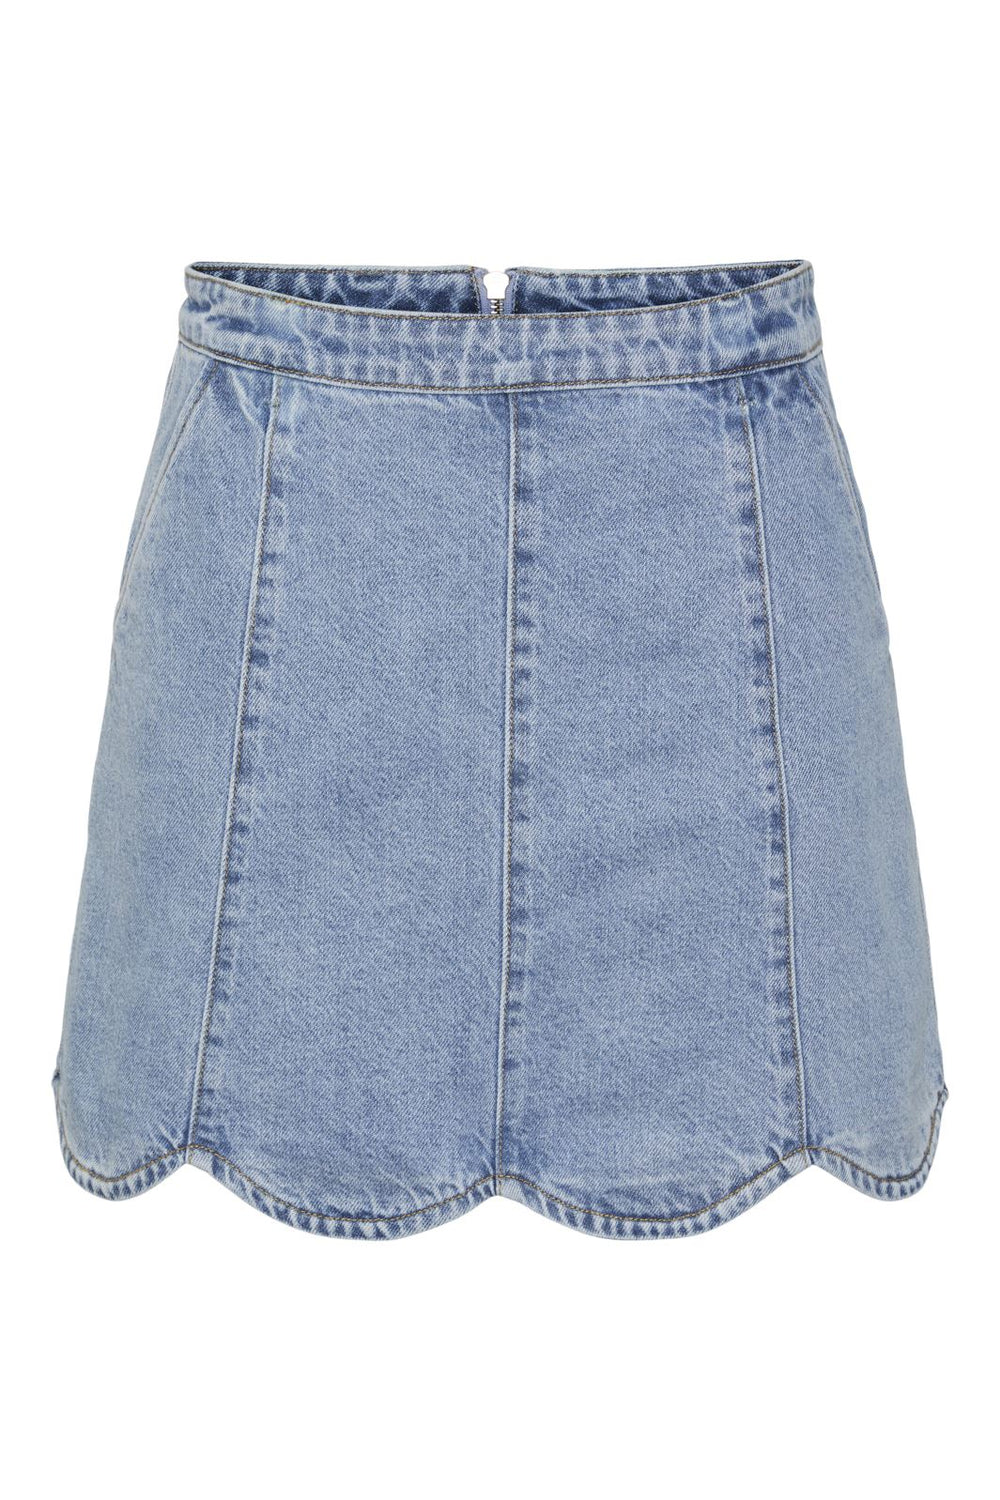 Y.A.S - Yasscallop Short Denim Skirt - 4439723 Light Blue Denim